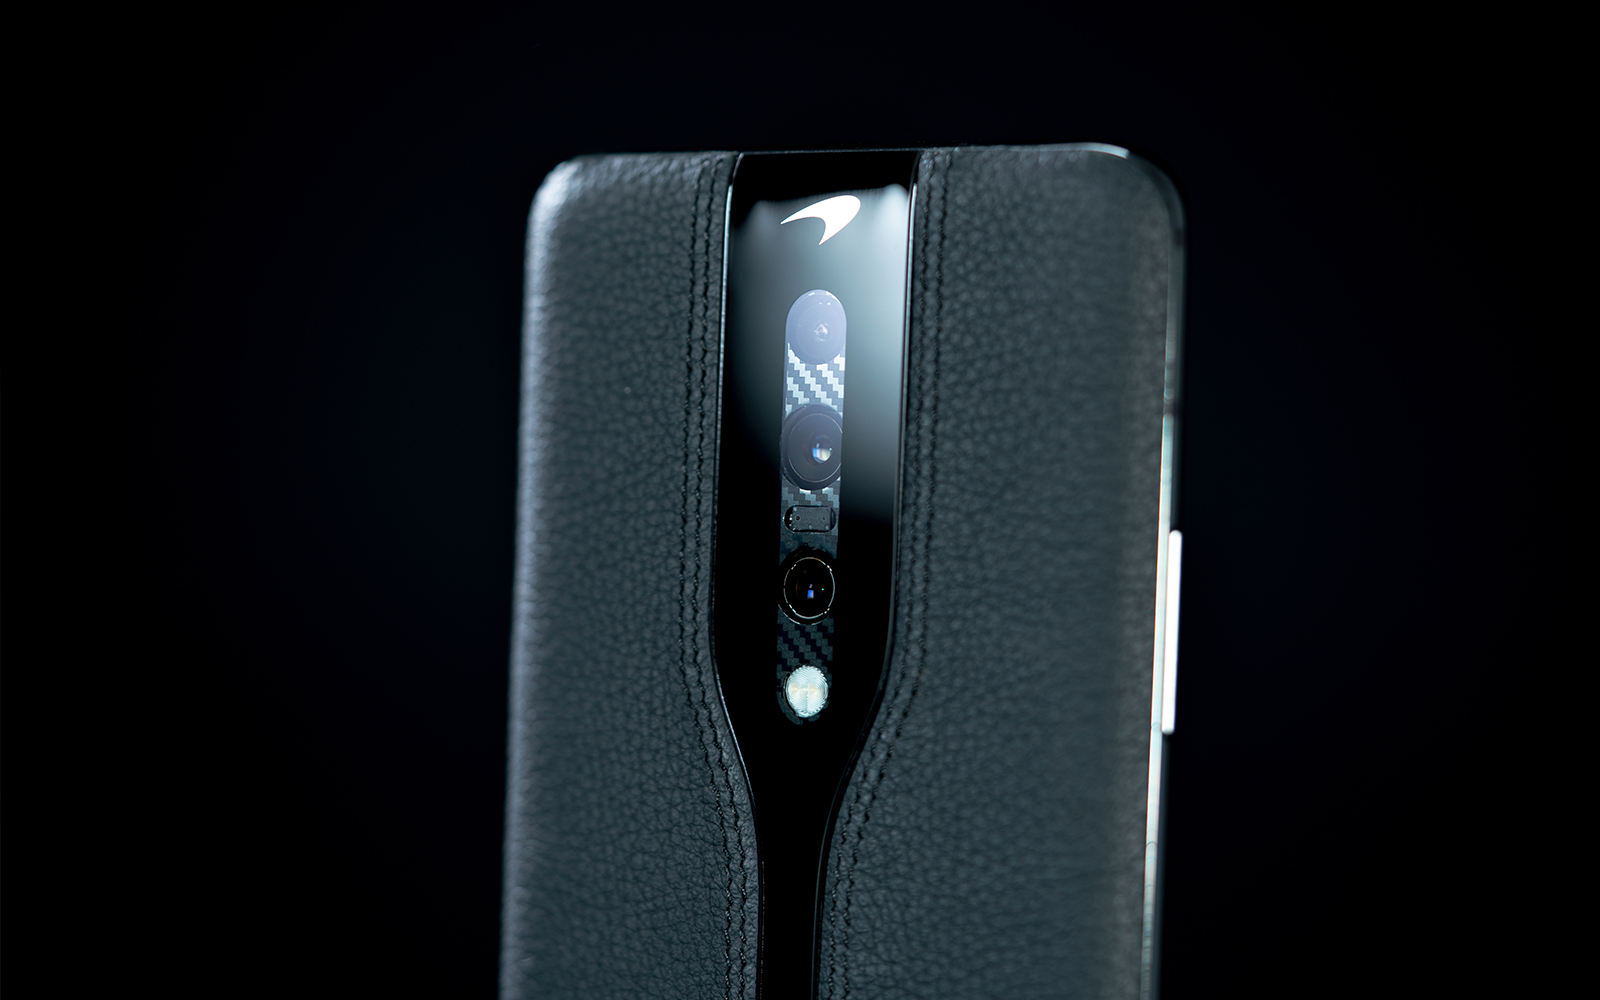 Un prototype de OnePlus Concept One tout de noir vêtu a été dévoilé